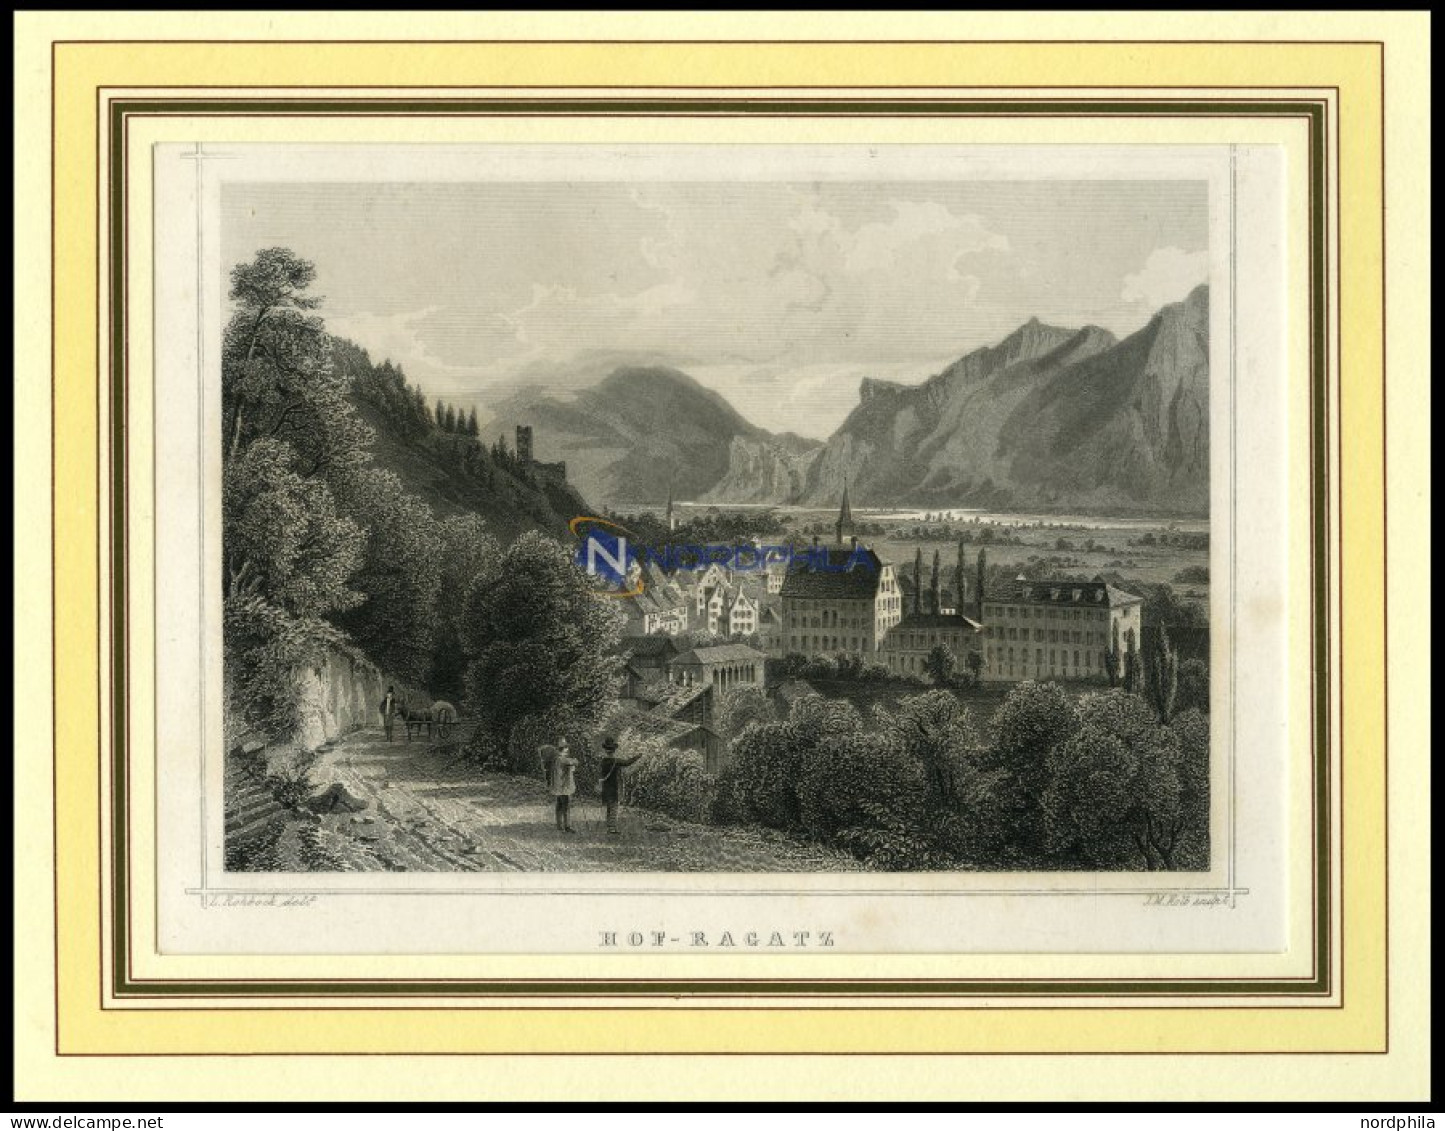 HOF-RAGATZ, Teilansicht, Stahlstich Von Rohbock/Kolb Um 1840 - Litografía